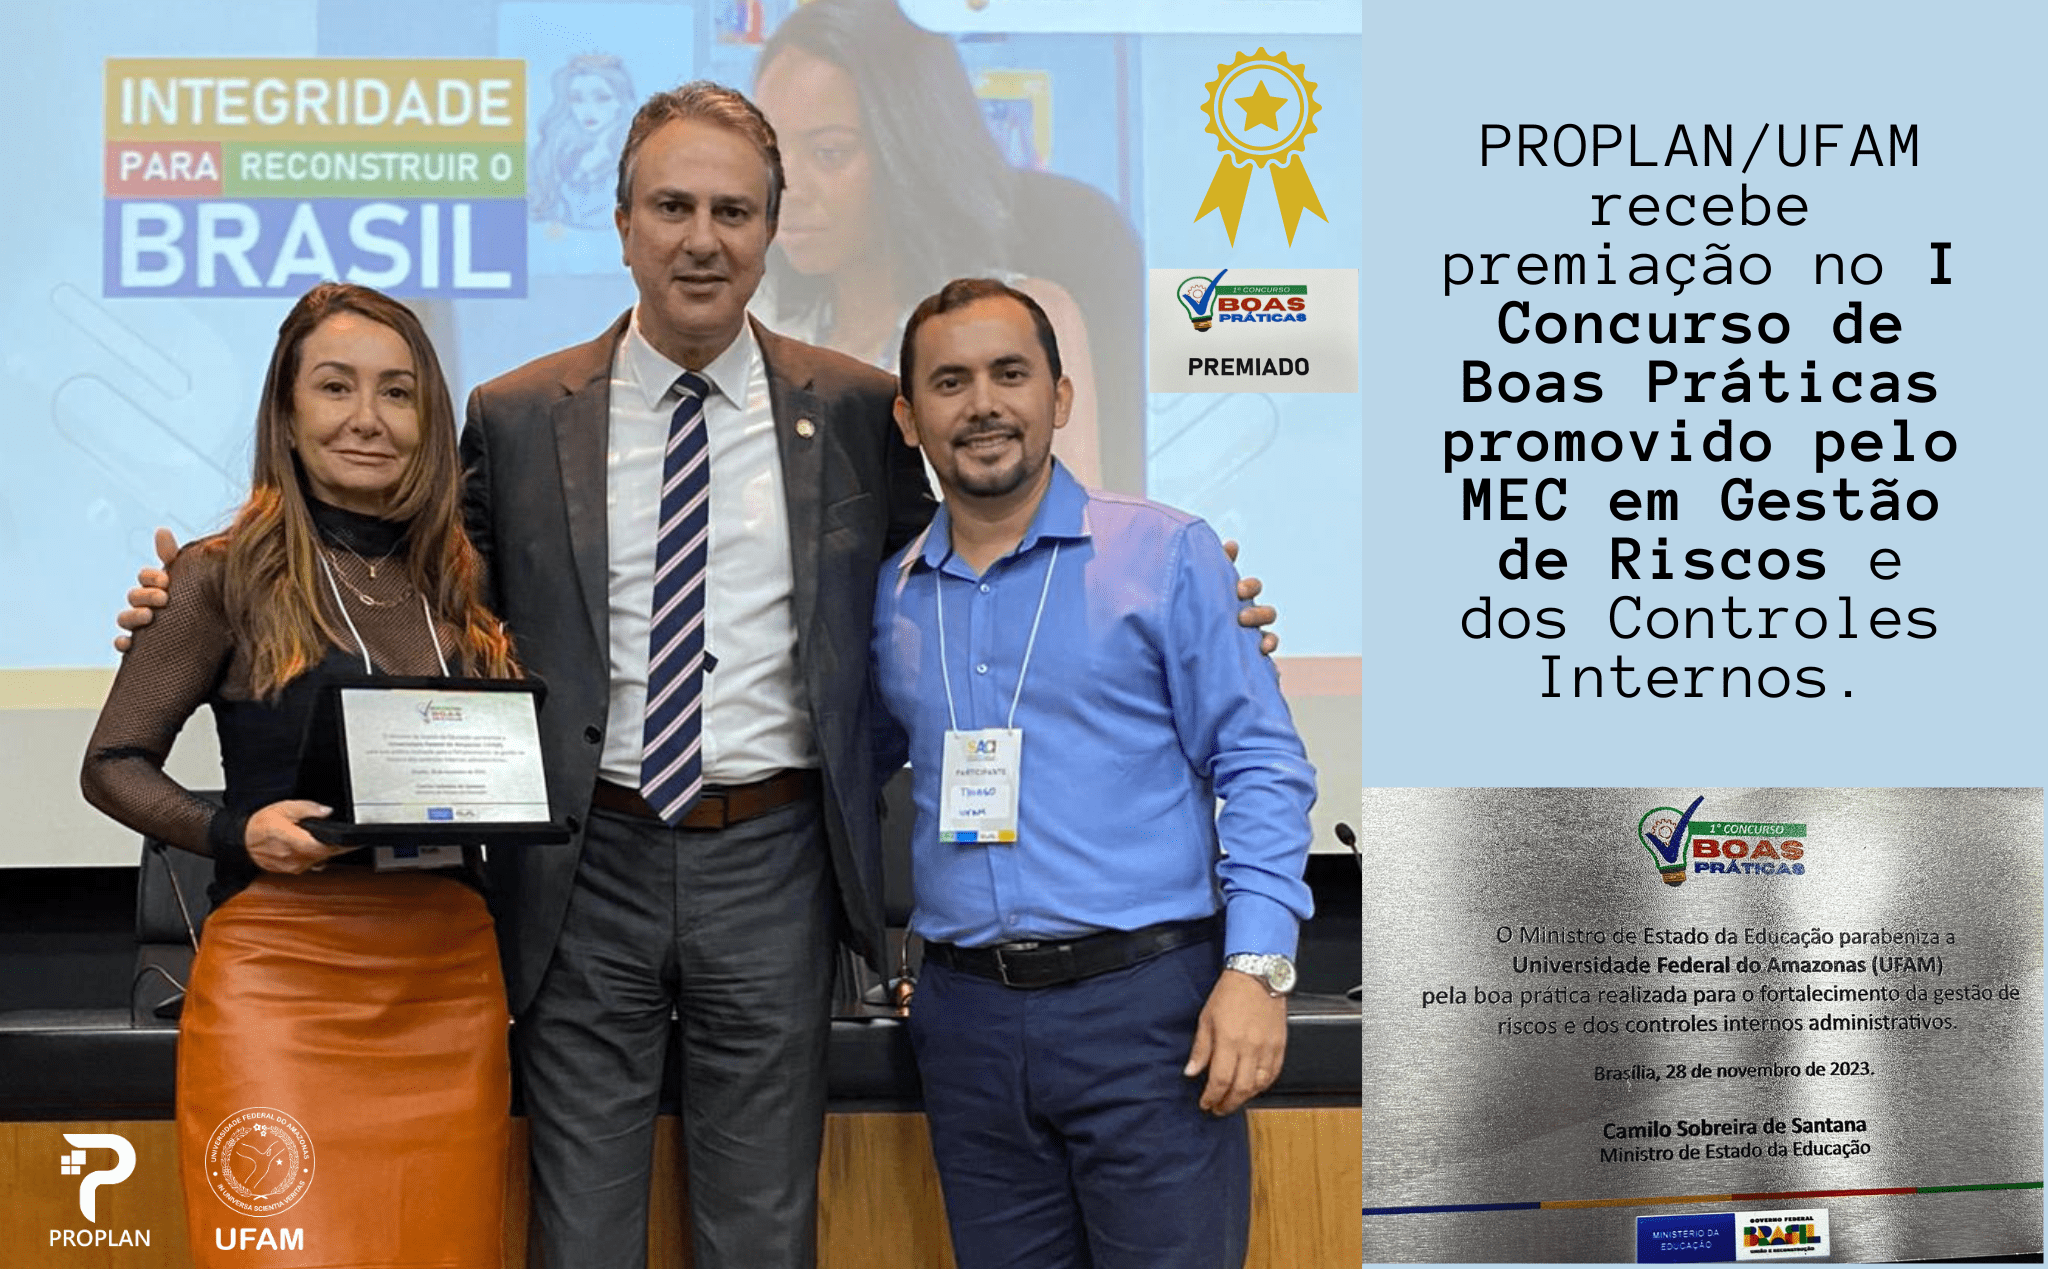 DEPI/PROPLAN recebe premiação no Concurso de Boas Práticas promovido pelo MEC